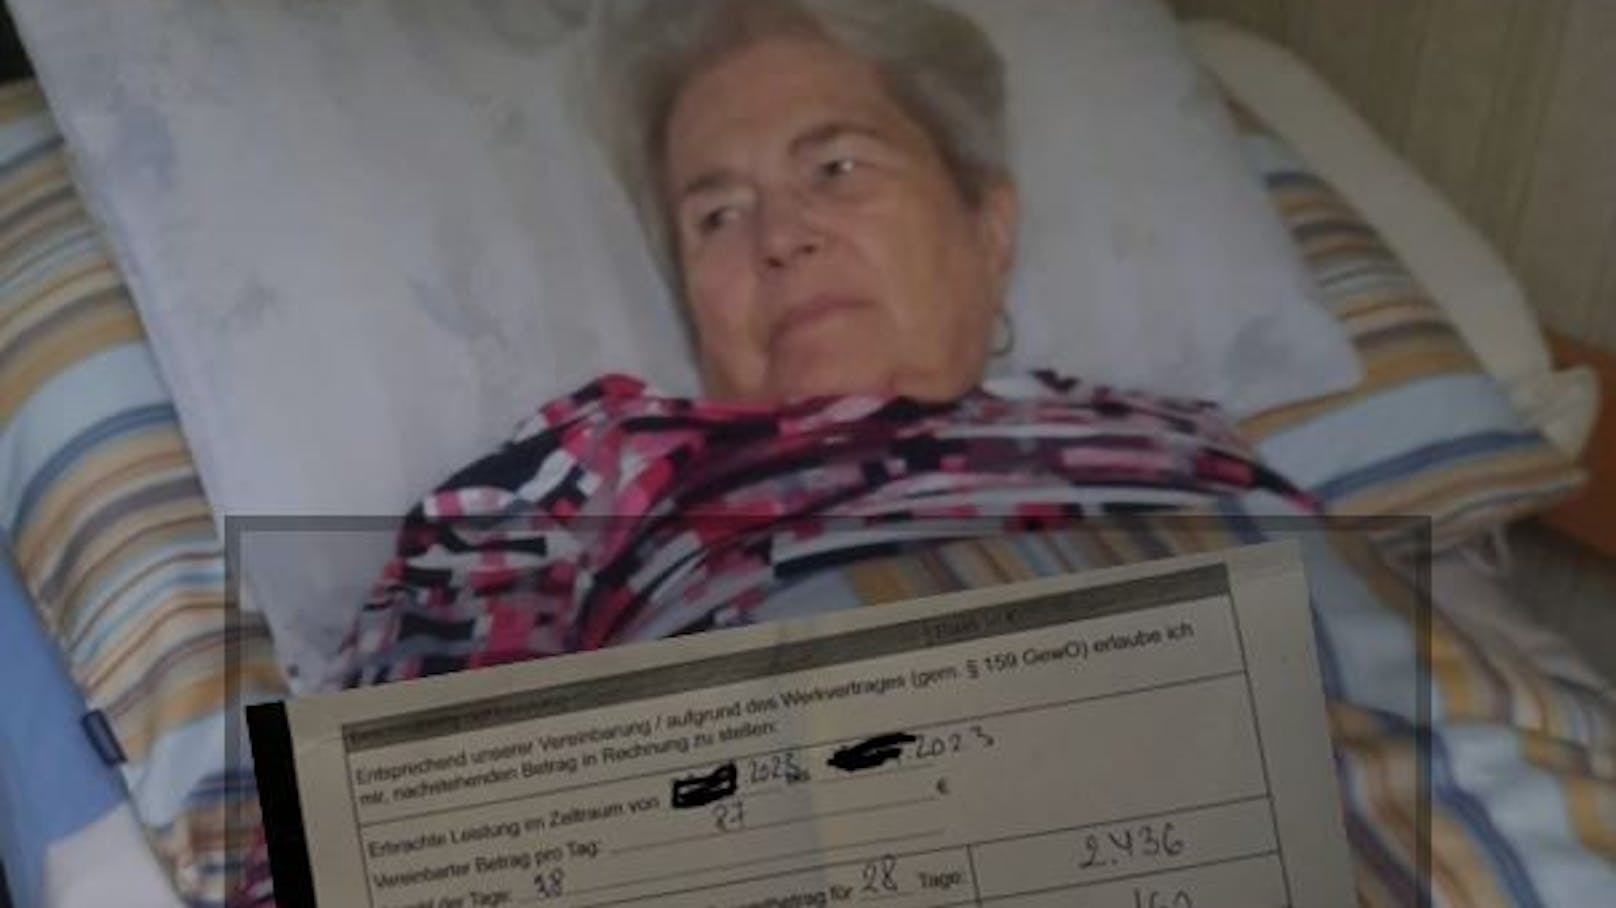 "Will daheim bleiben“ – Oma kann Fixkosten nicht zahlen